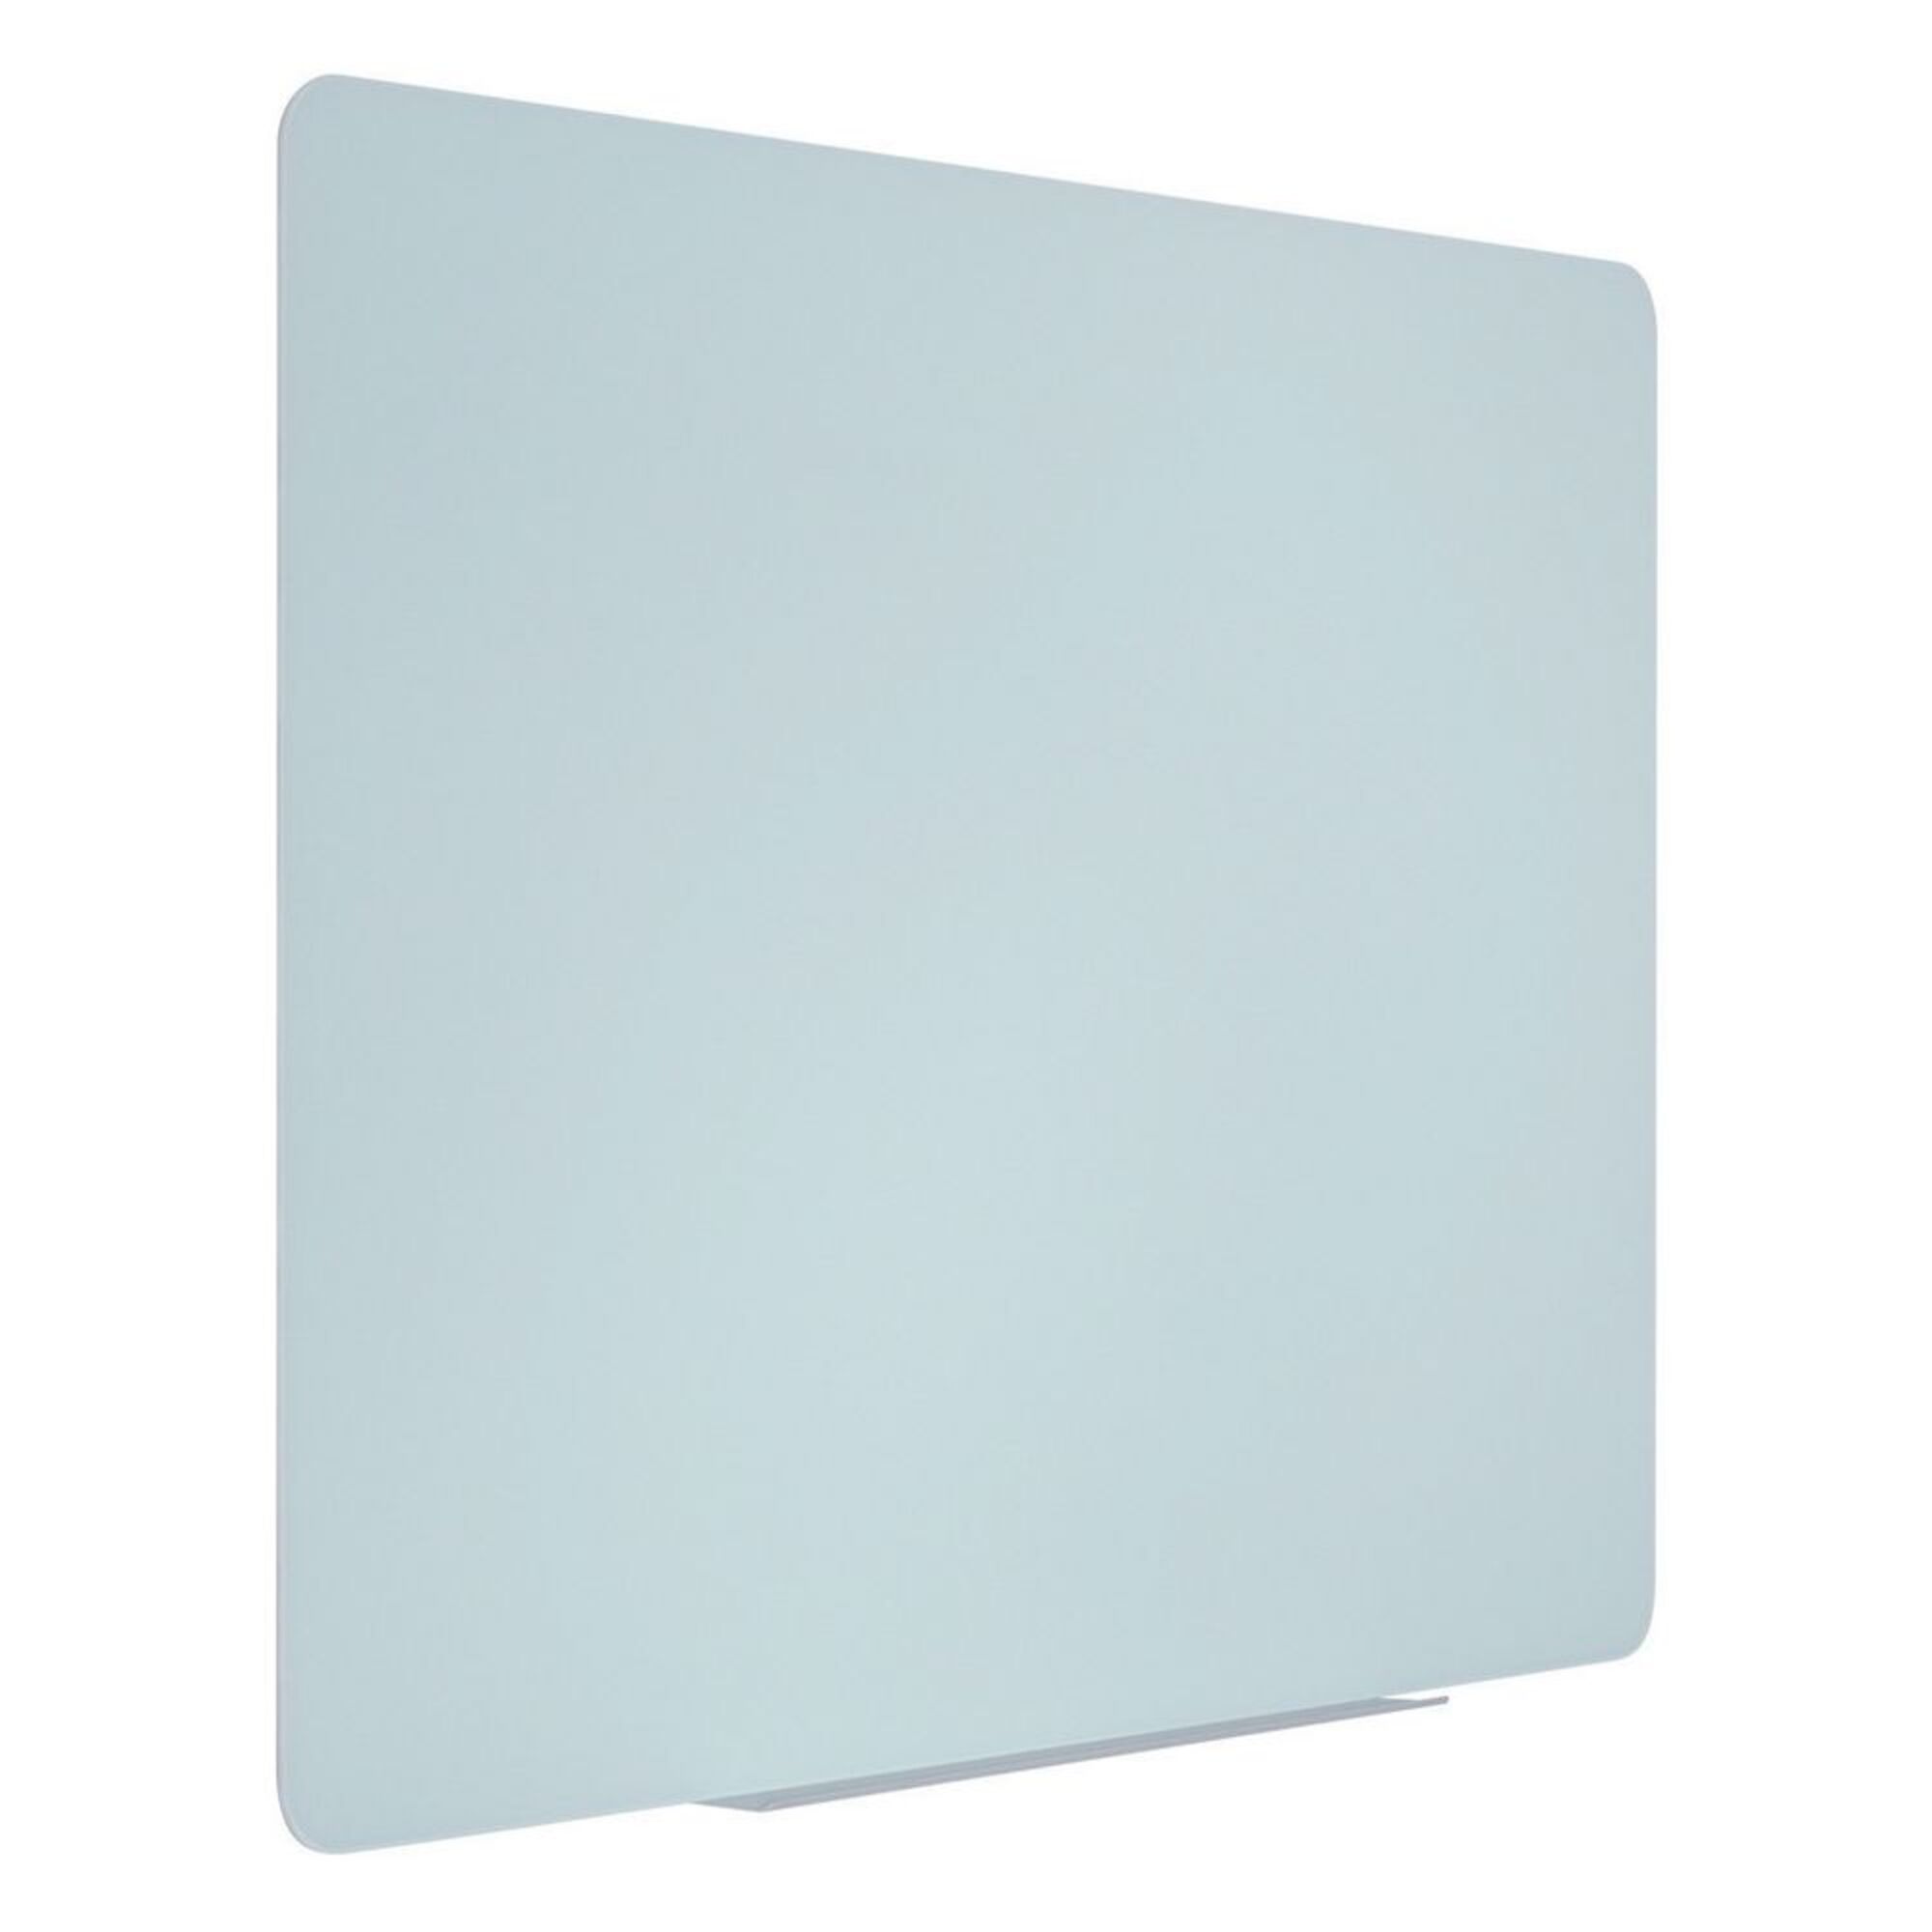 Quadro magnético de limpeza a seco, superfície de vidro temperado branco, 4 mm, 900 x 600 mm